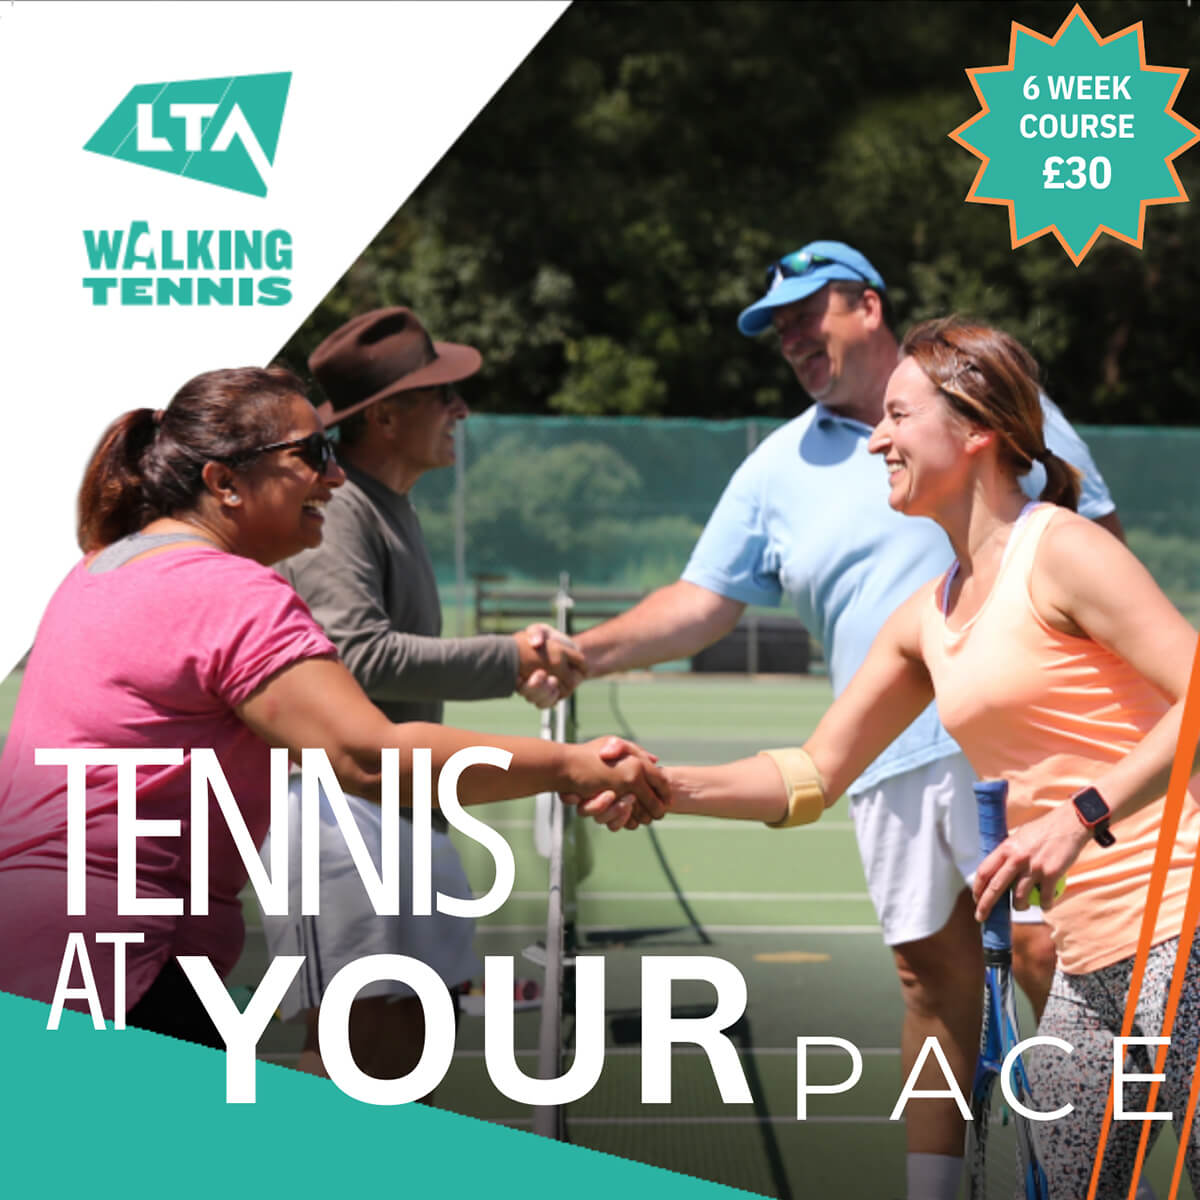 LTA Walking Tennis. Tennis At Your Pace